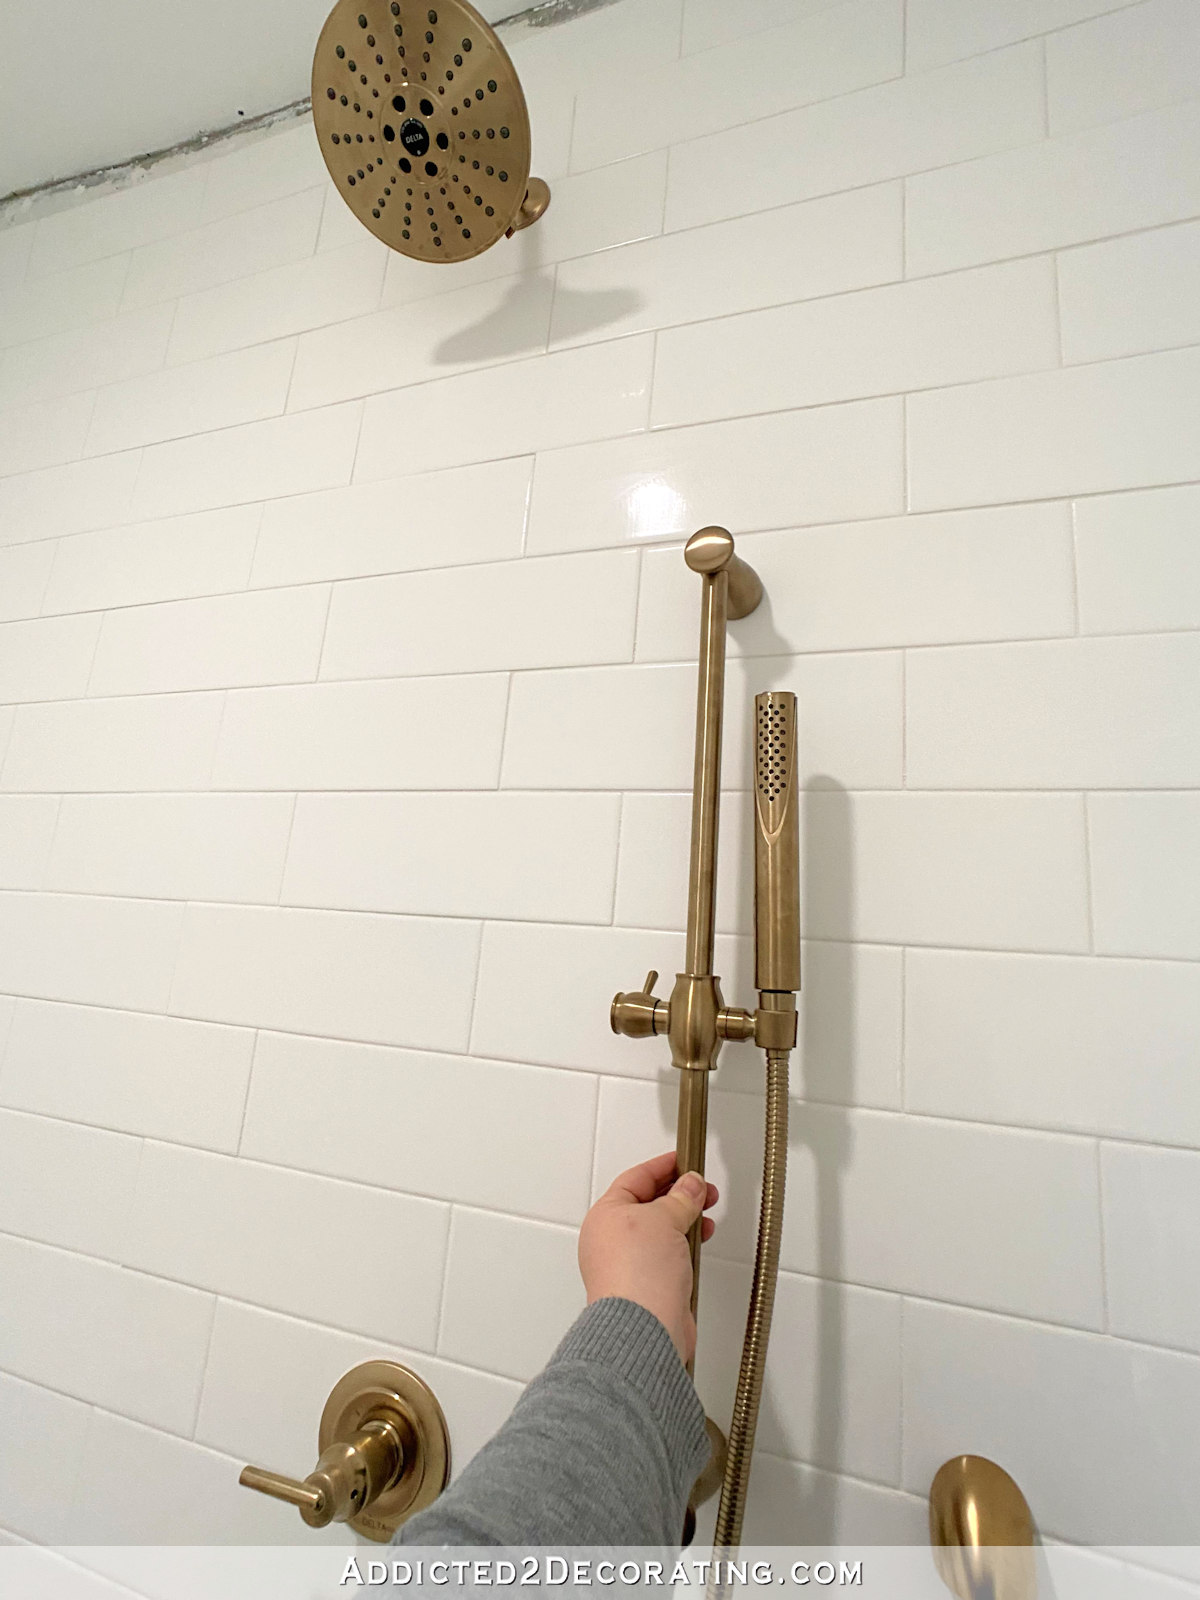 Shower Plumbing Fixtures Are Installed!